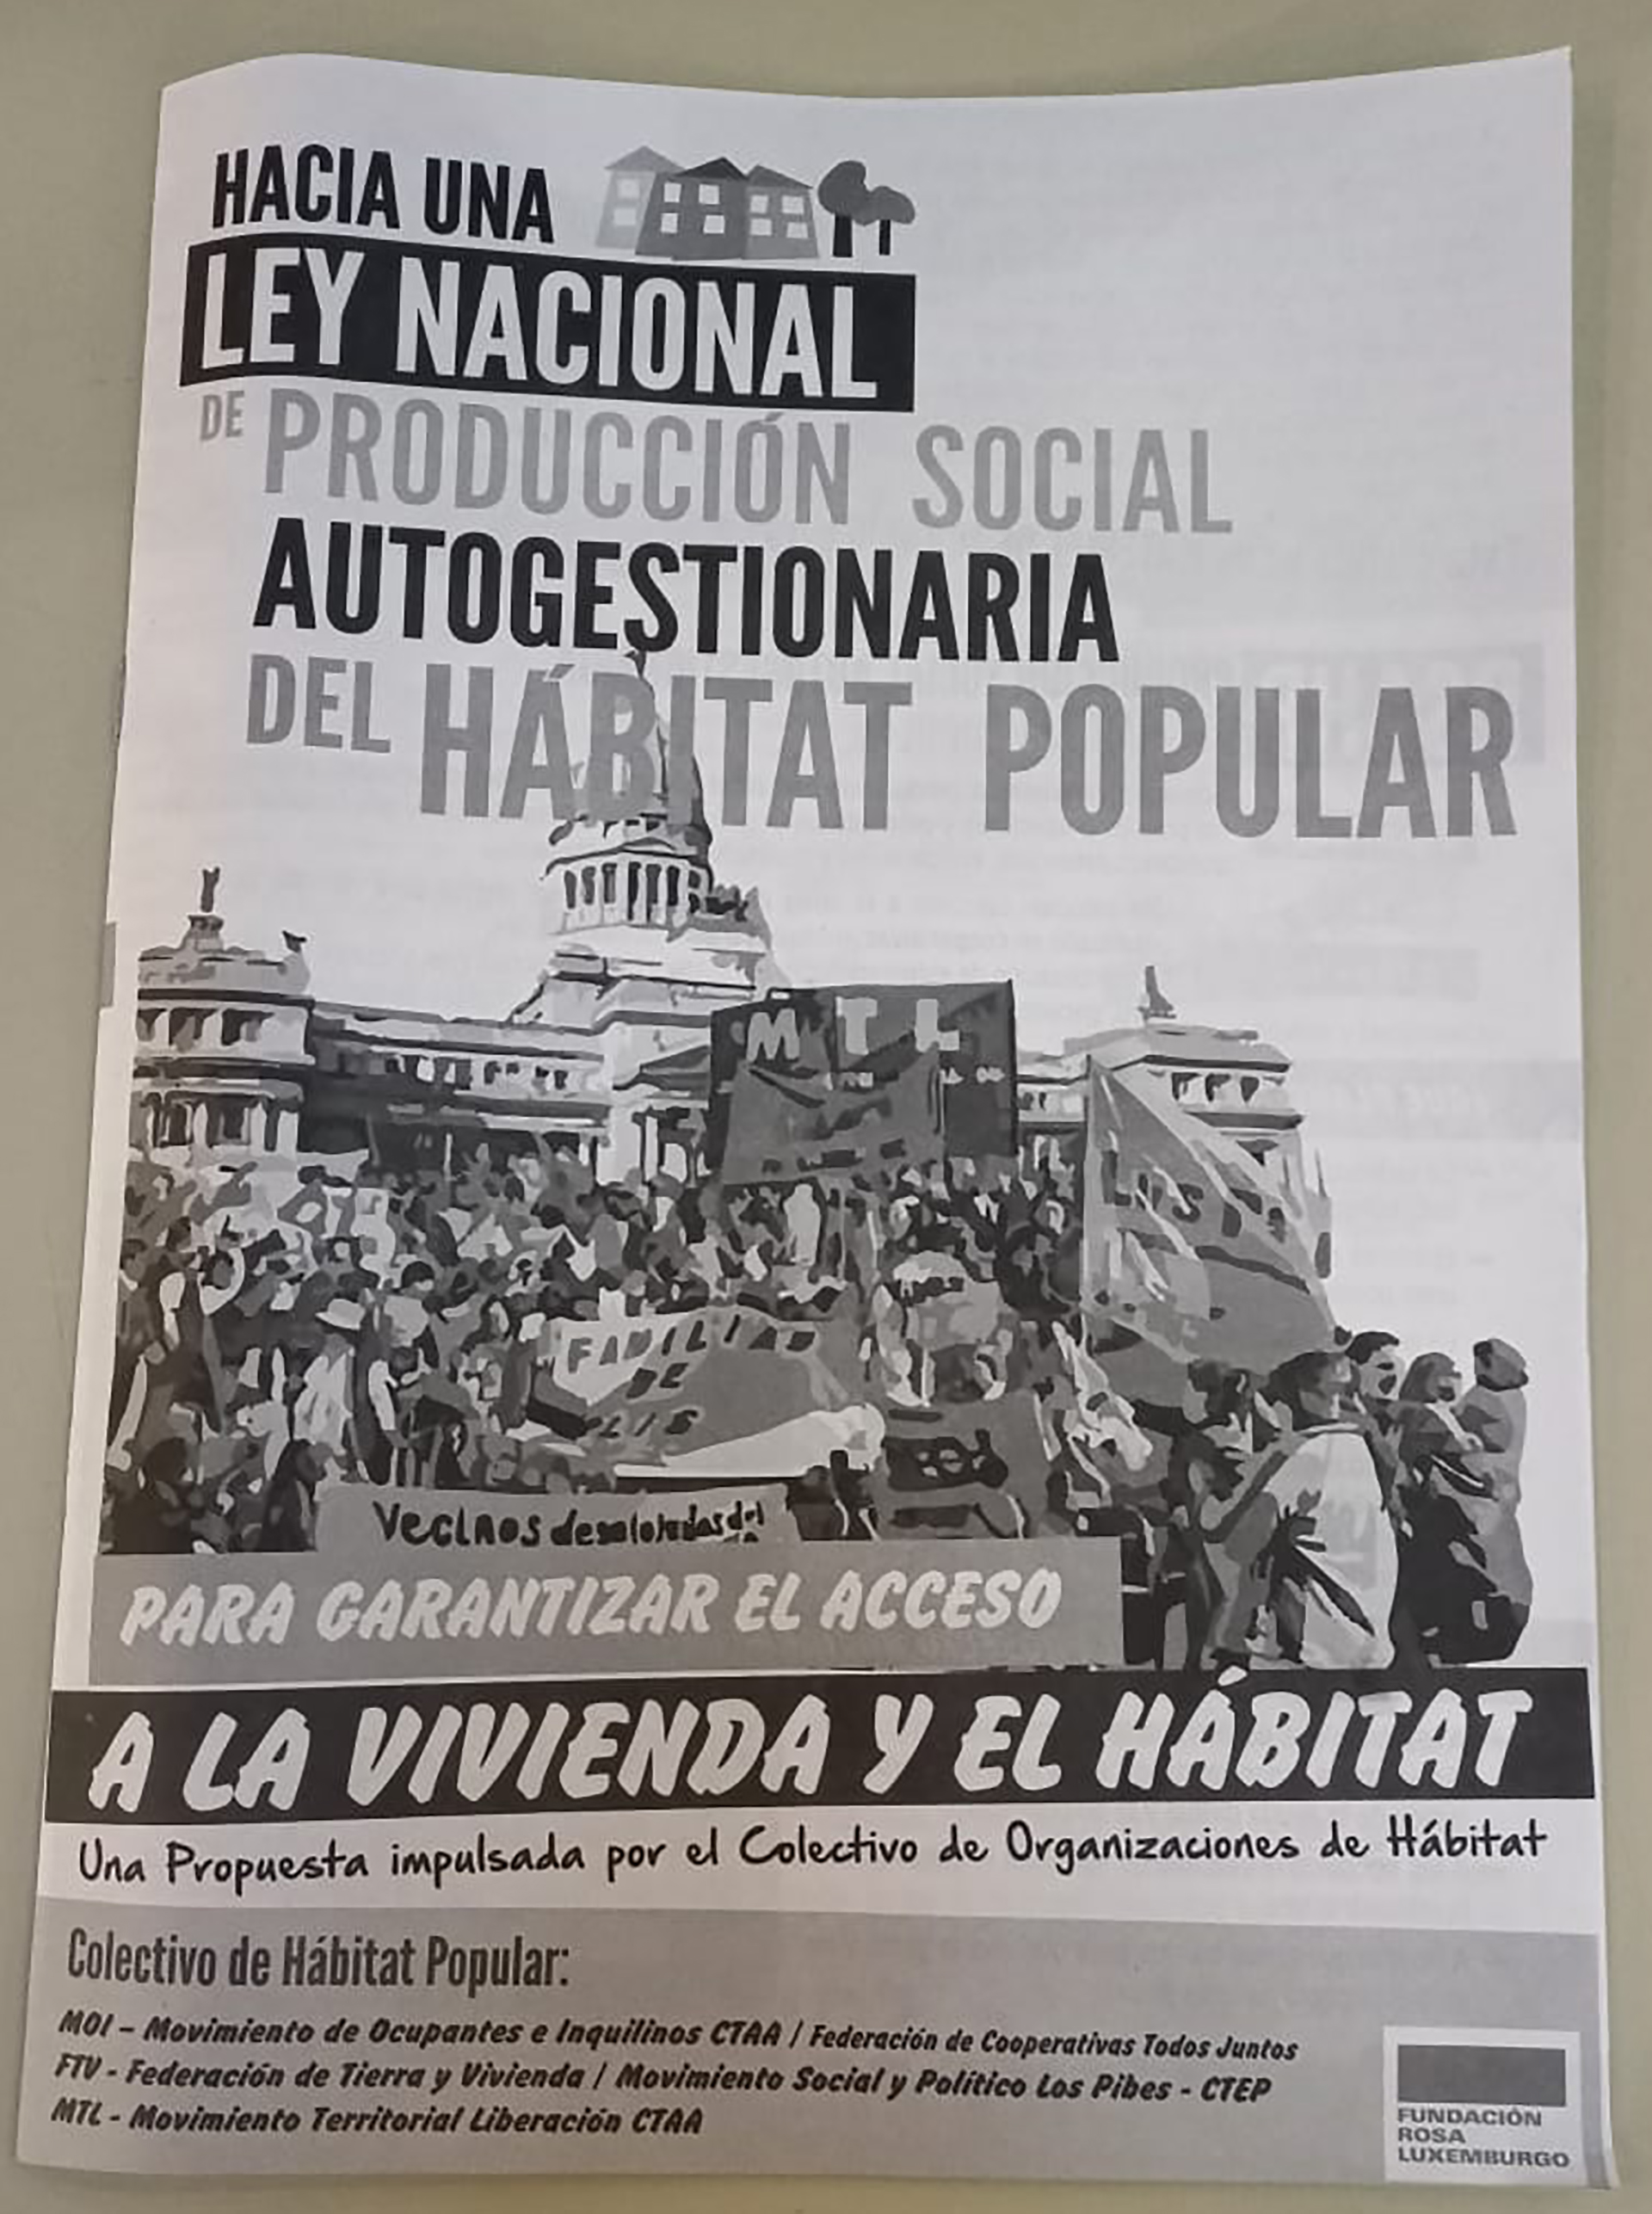 La proclama se repartió durante la apertura que Alberto Fernández realizó en el CCK